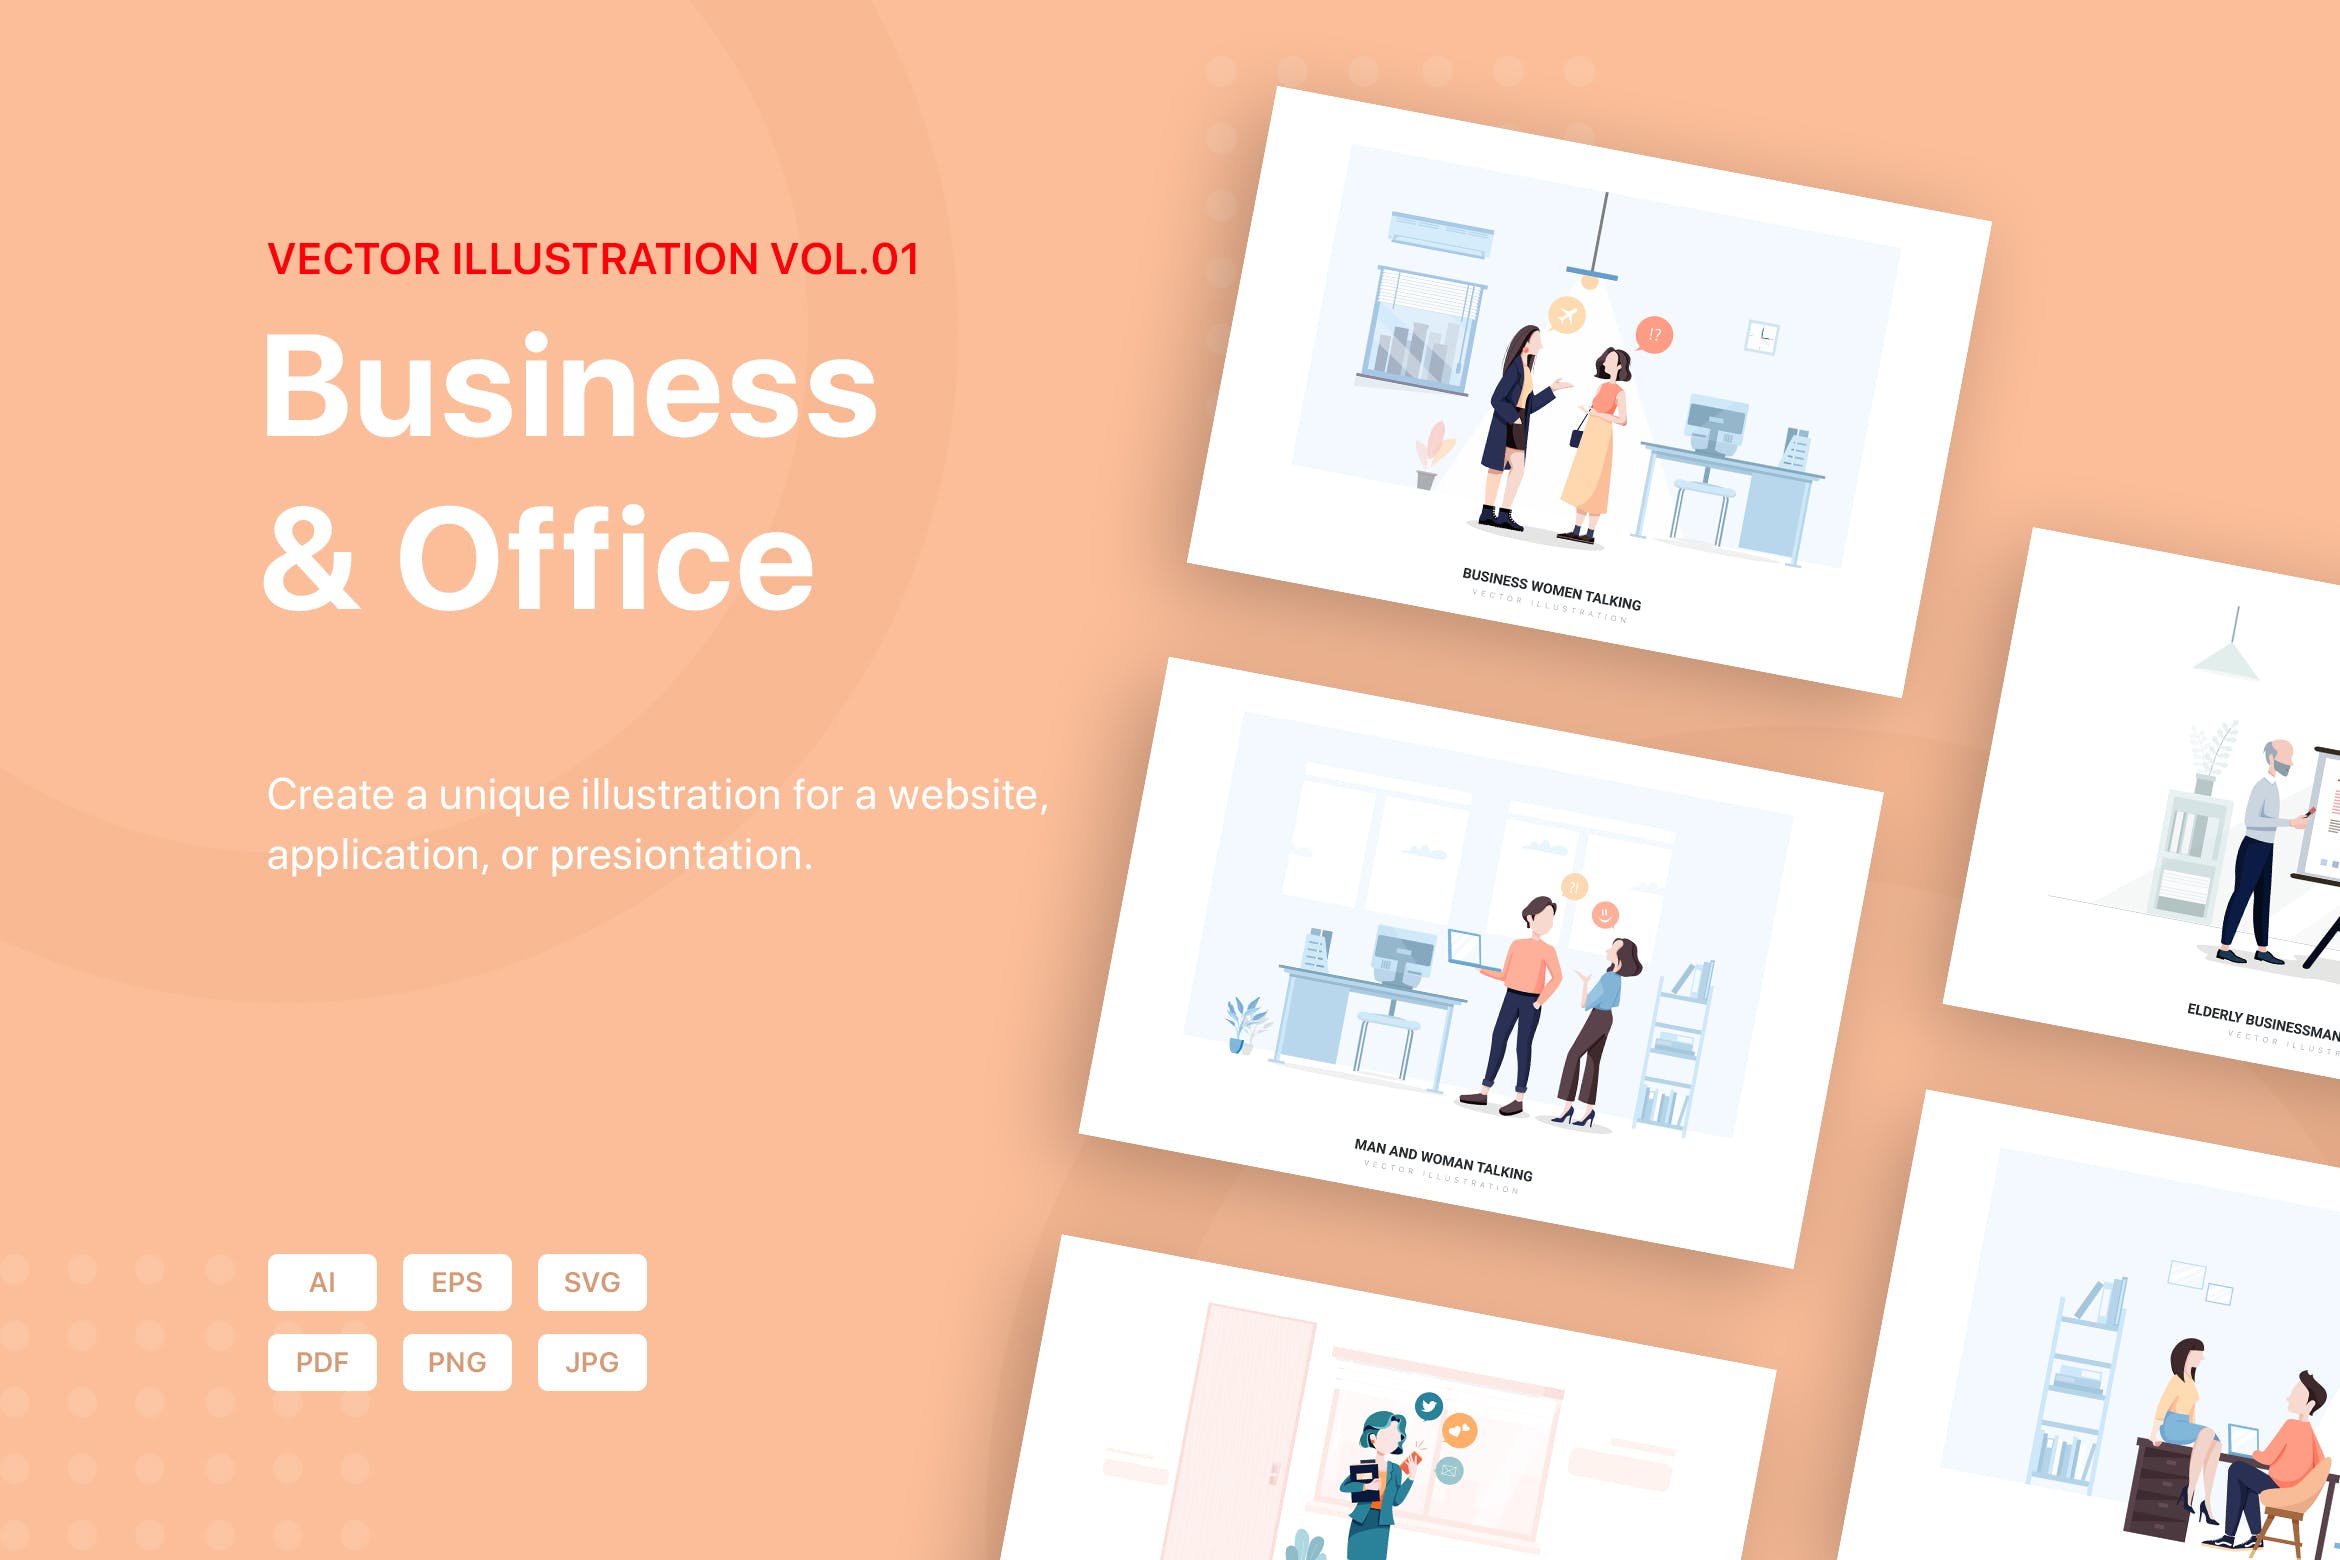 商业&办公室场景矢量插画素材包v1 Business Illustration Pack (Vol 01)插图